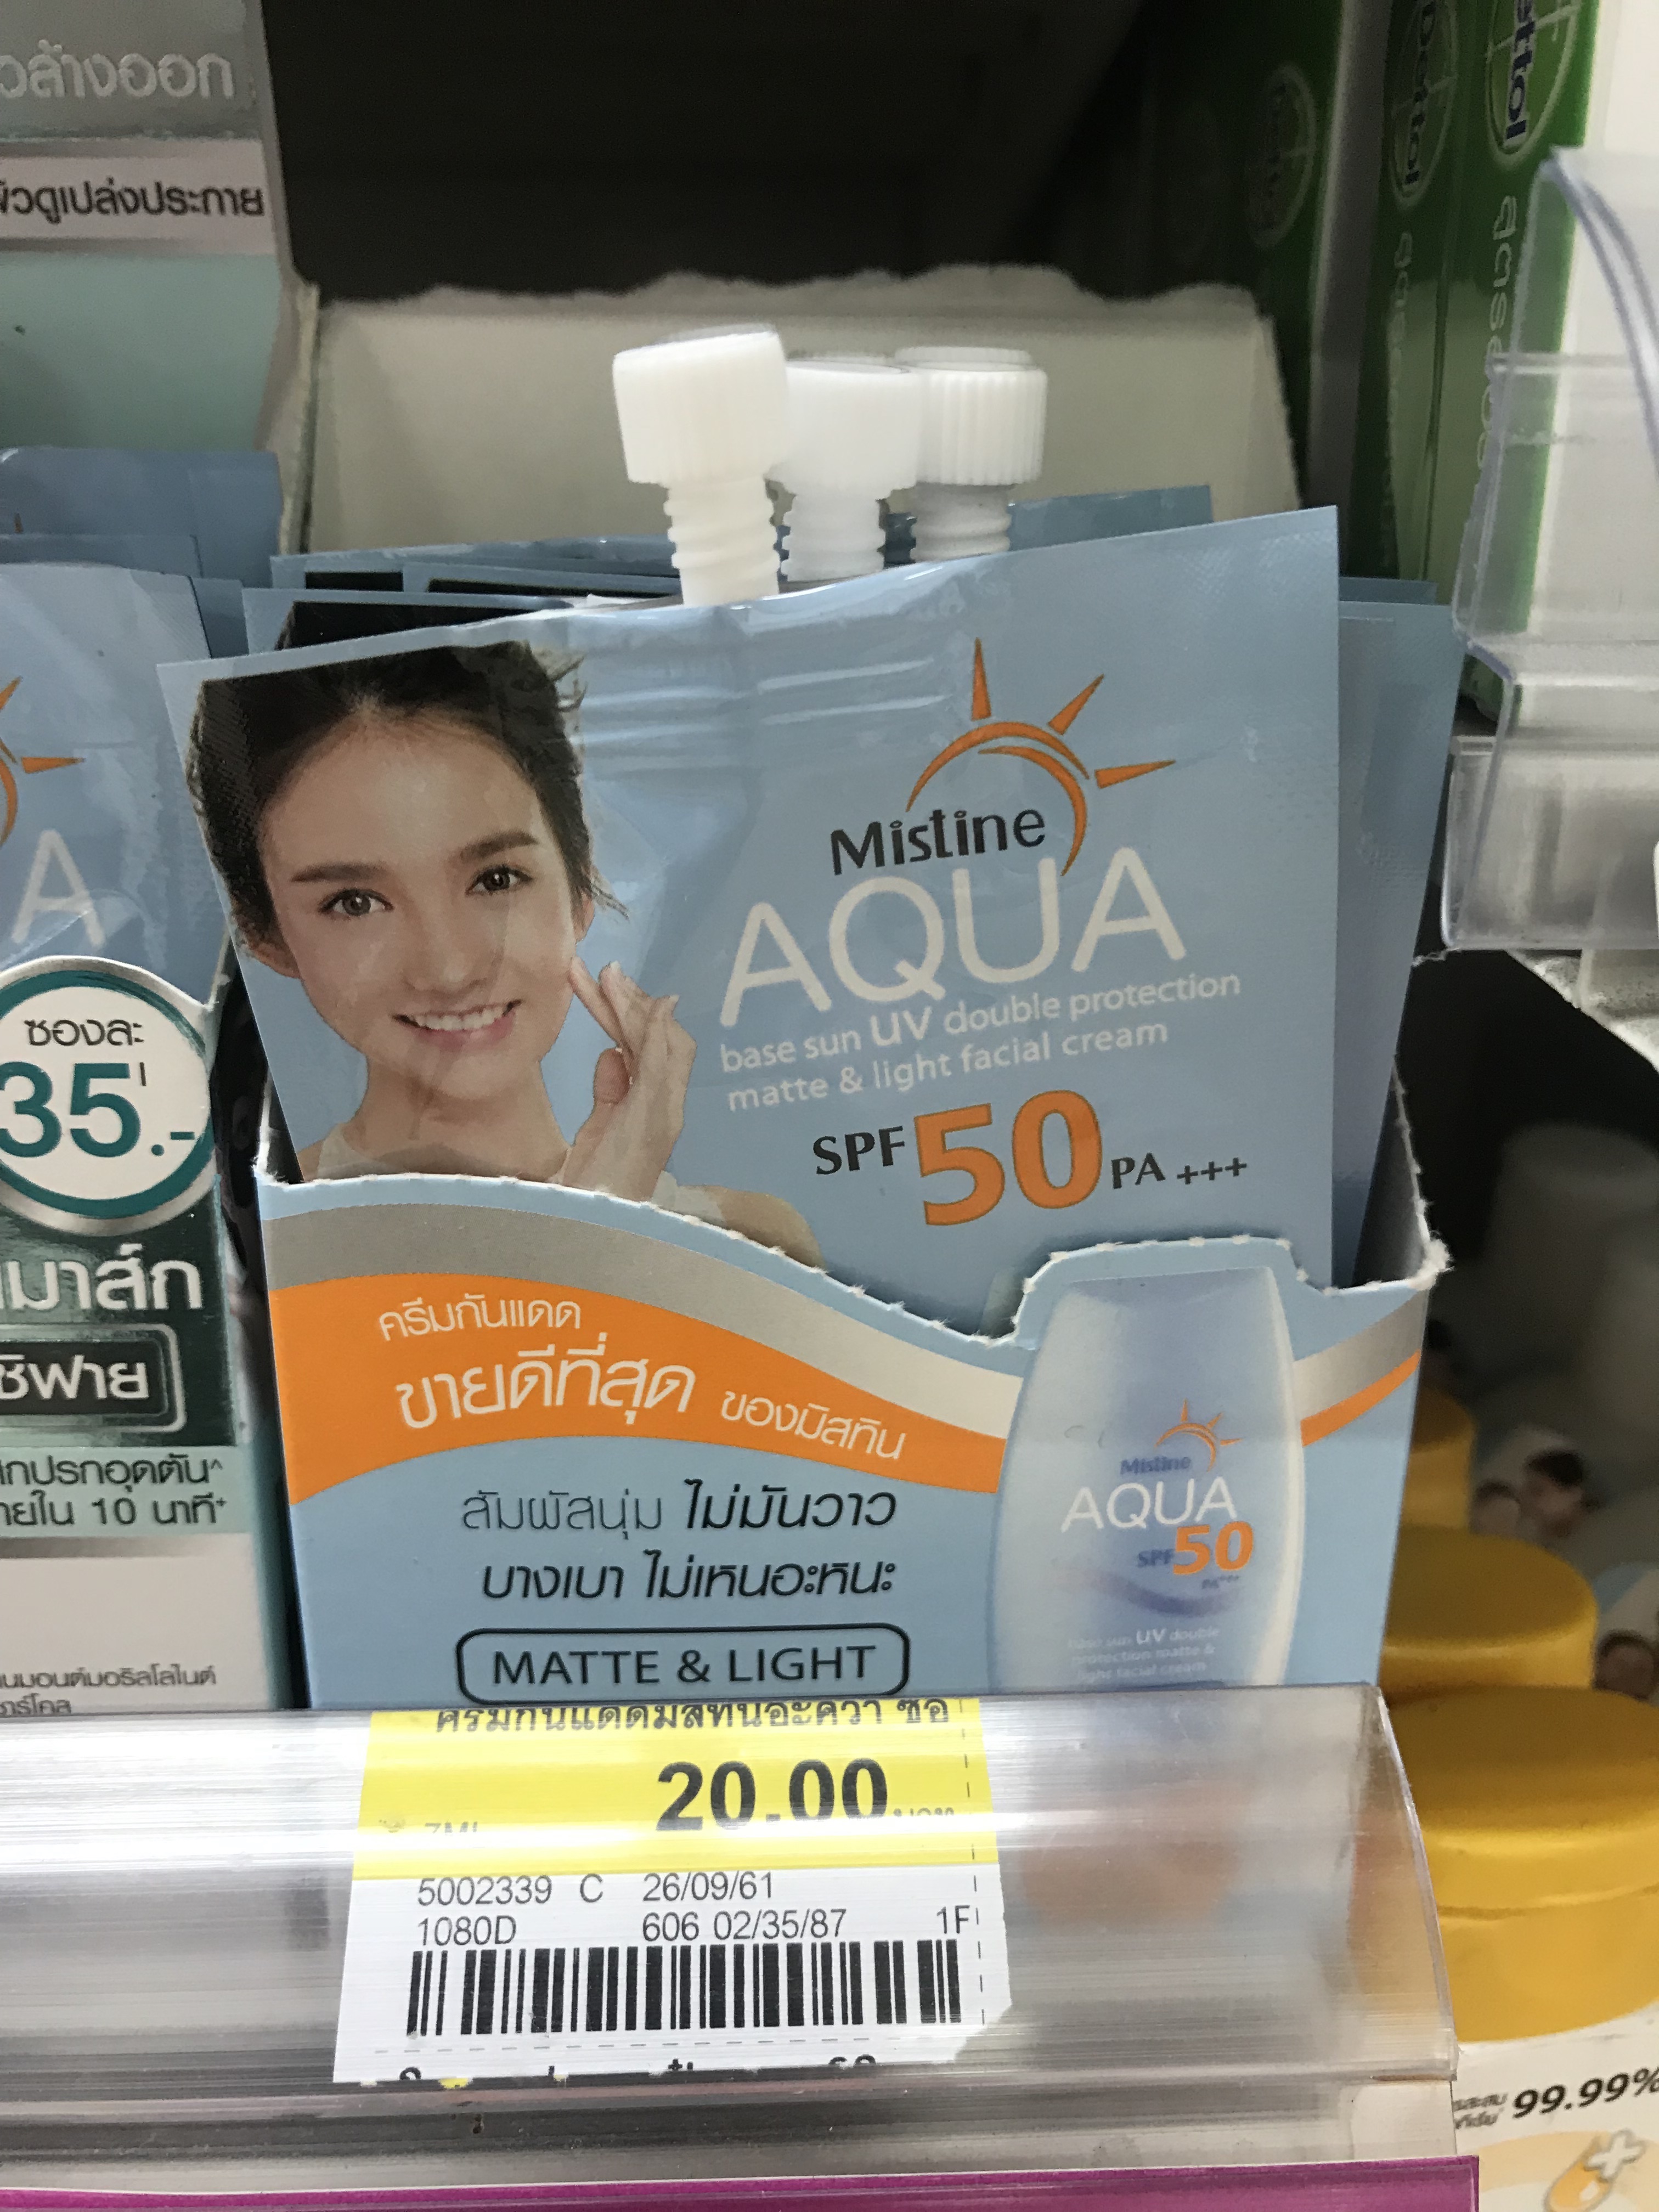 分享泰国711店值得买的美容产品清单，价格不到40块！